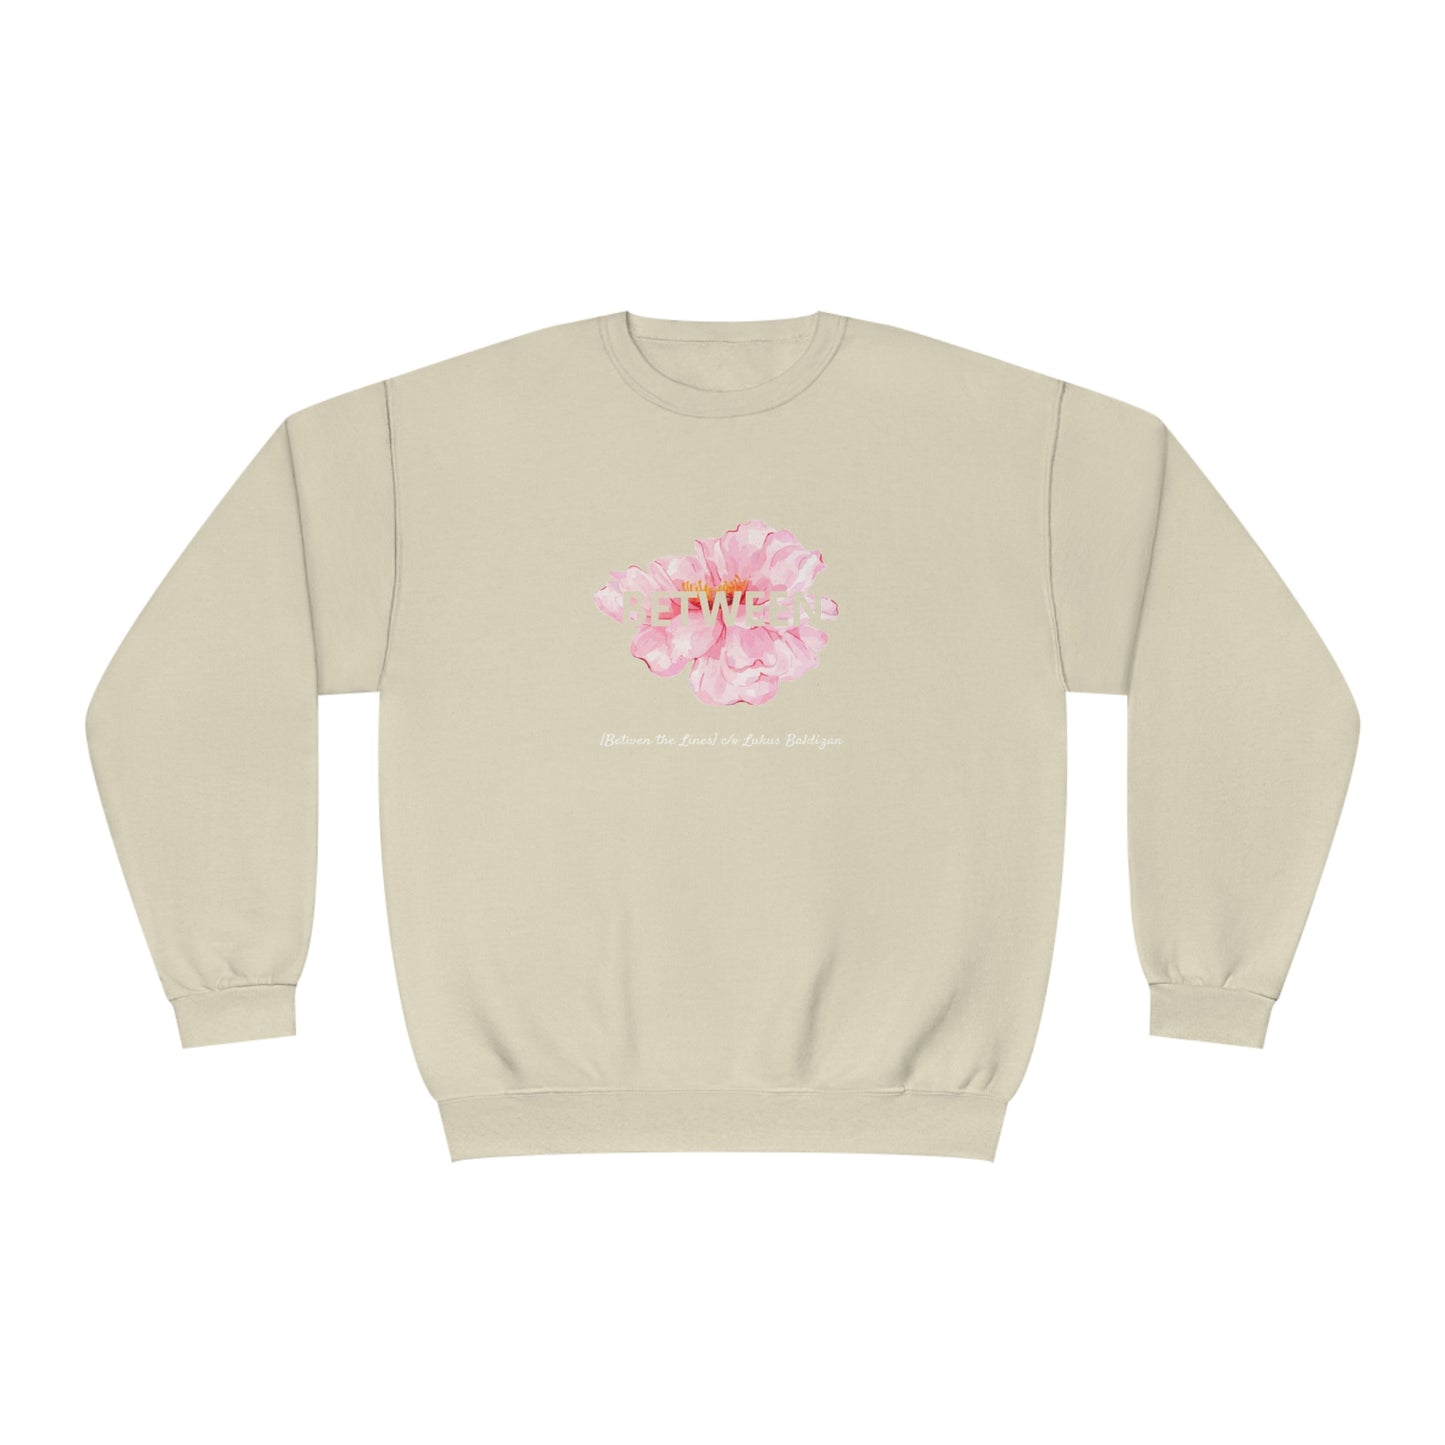 "[Flowers]" Between the Lines Crewneck Sweatshirt